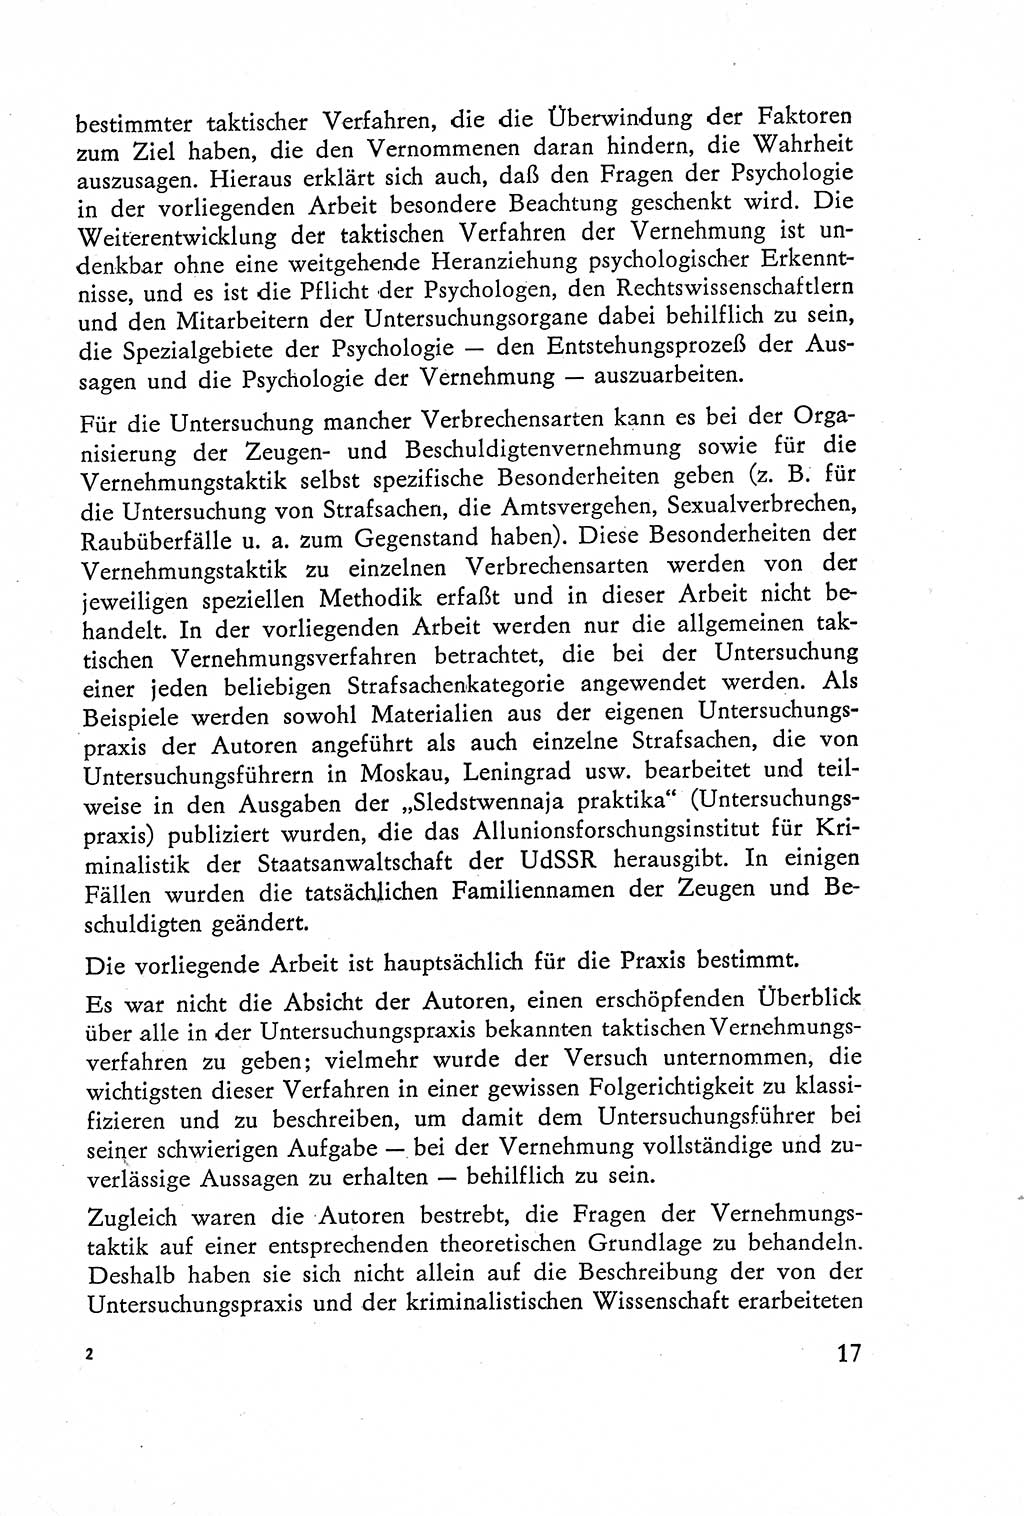 Die Vernehmung [Deutsche Demokratische Republik (DDR)] 1960, Seite 17 (Vern. DDR 1960, S. 17)